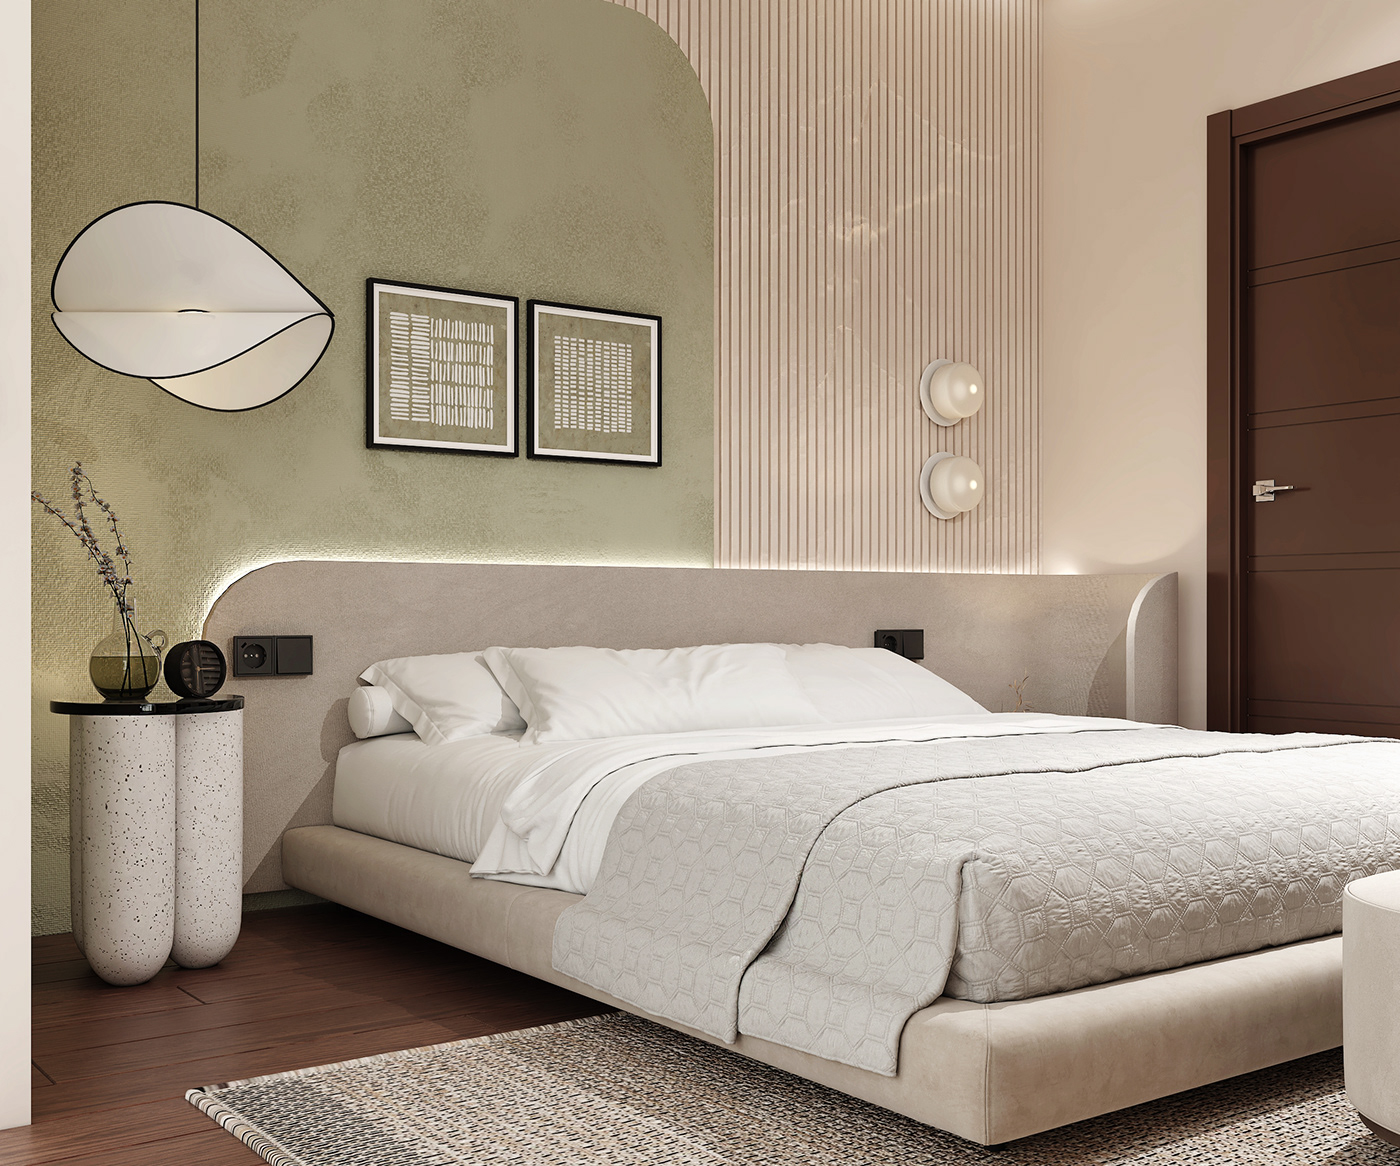 bedroom interior design  bed bedroom design